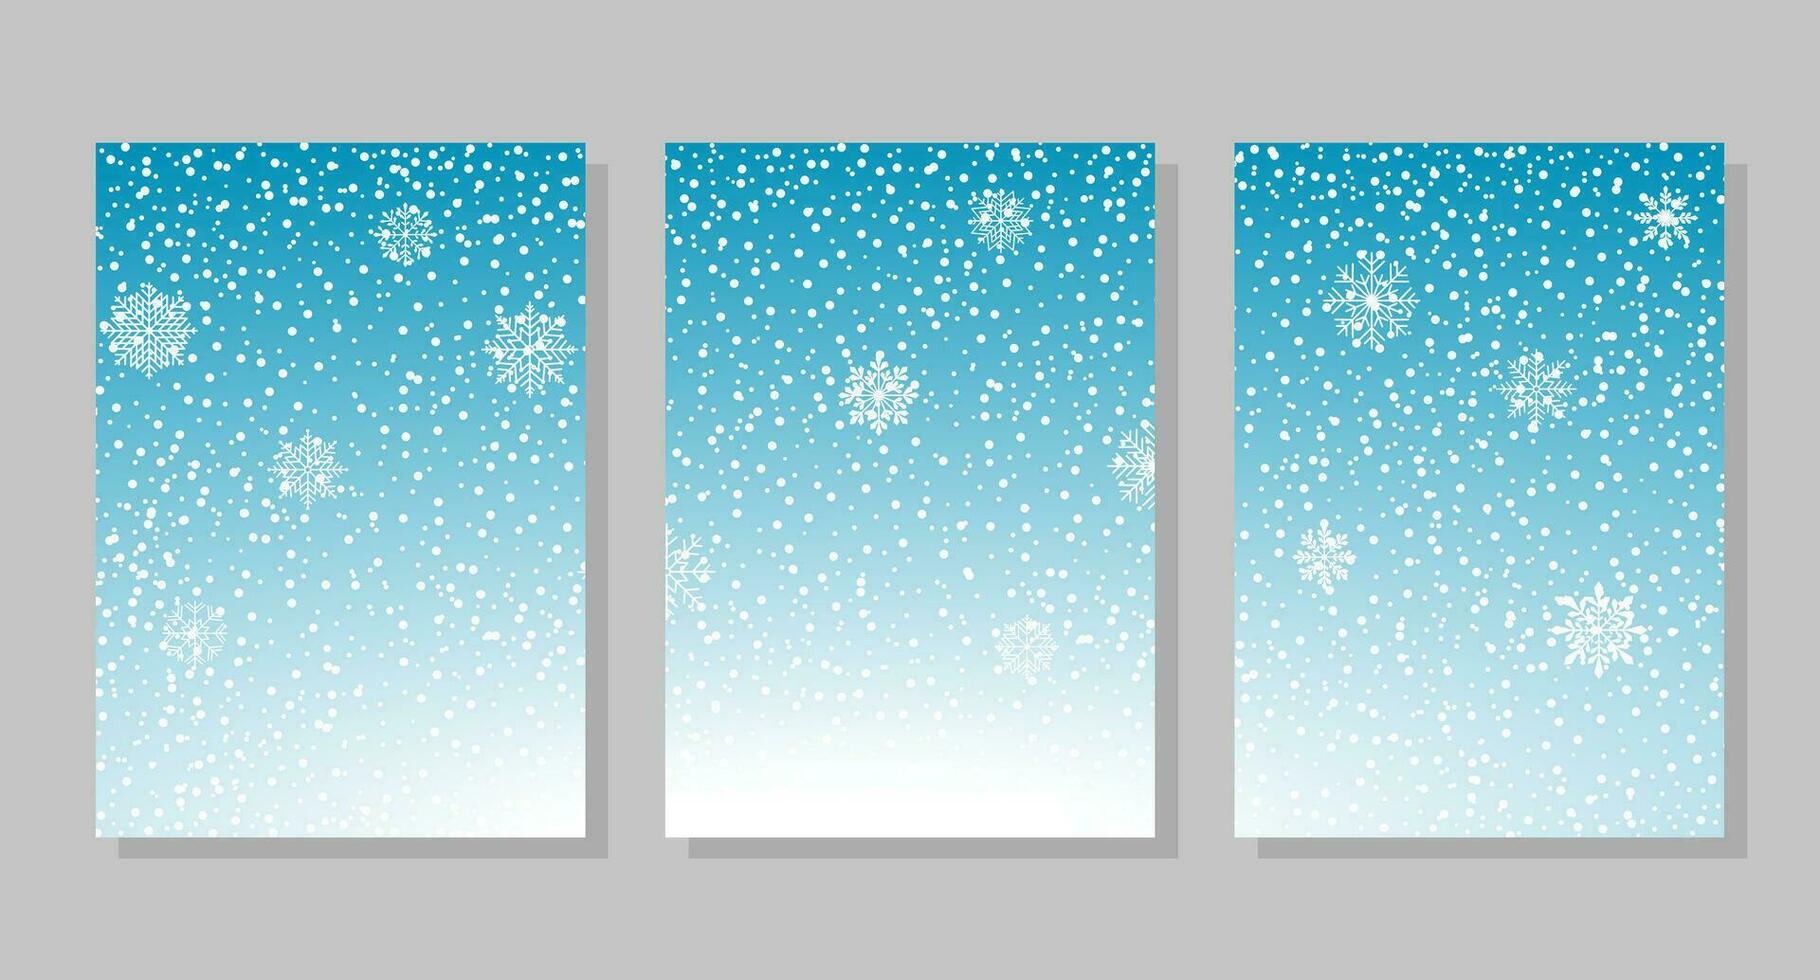 conjunto de invierno cielo antecedentes con nieve y copos de nieve, marcos vector ilustración. social medios de comunicación bandera modelo para cuentos, publicaciones, blogs, tarjetas, invitaciones